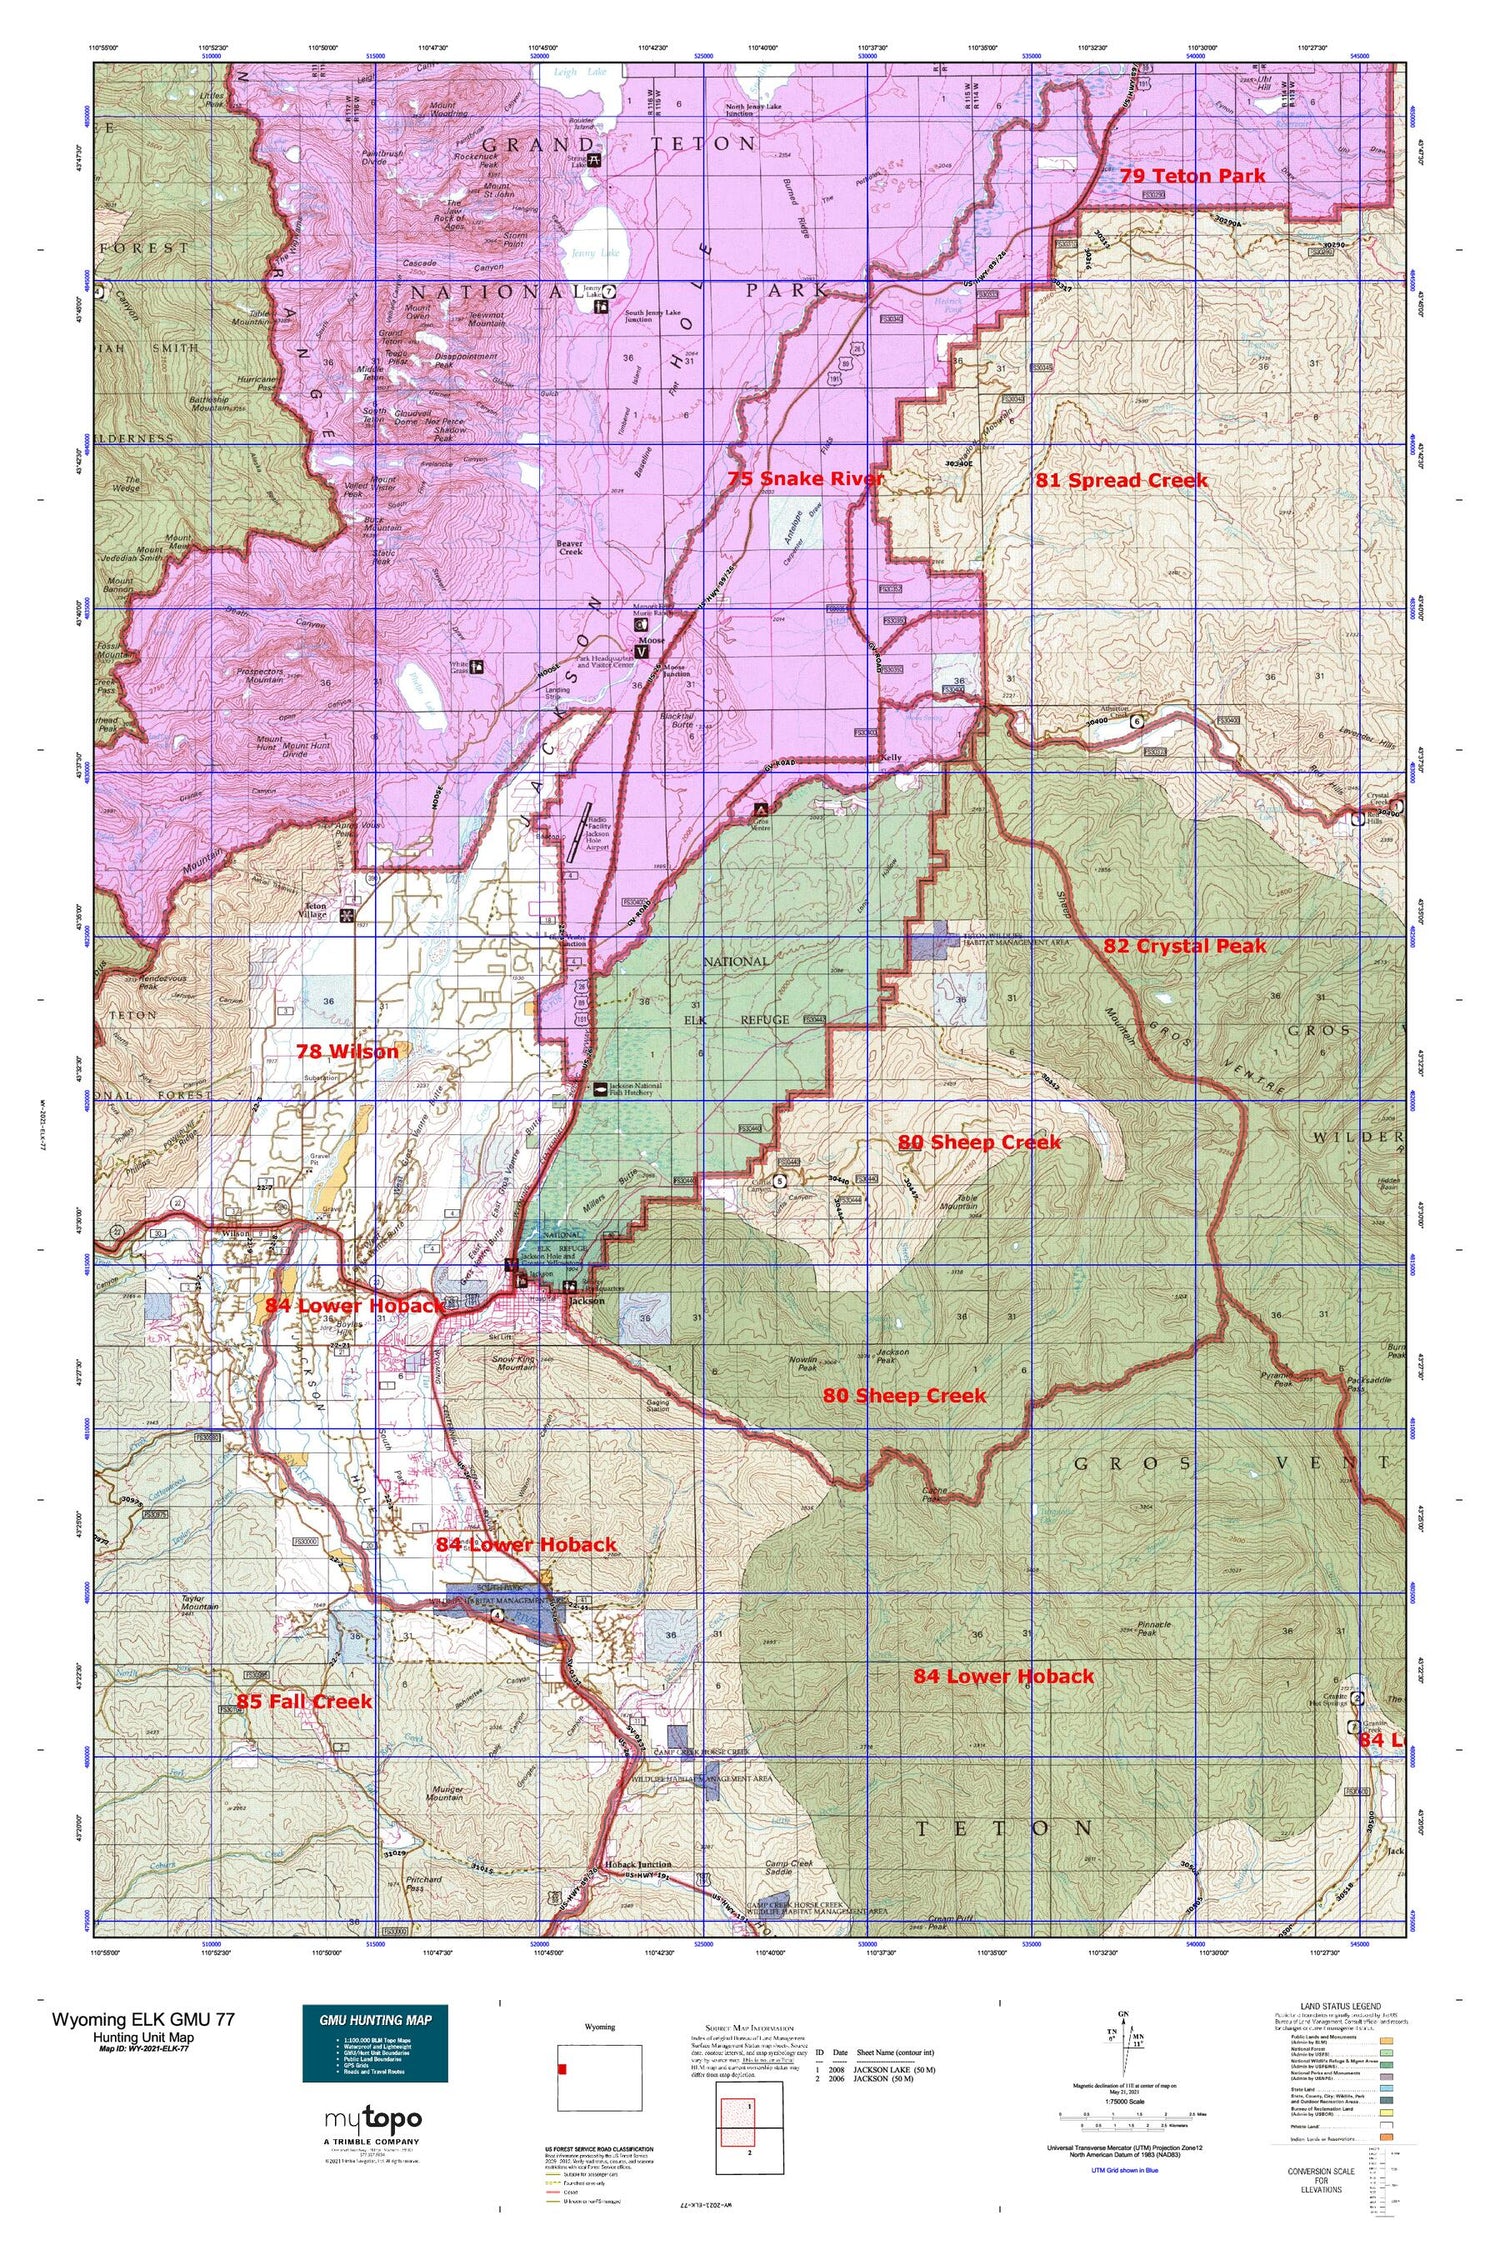 Wyoming Elk GMU 77 Map Image